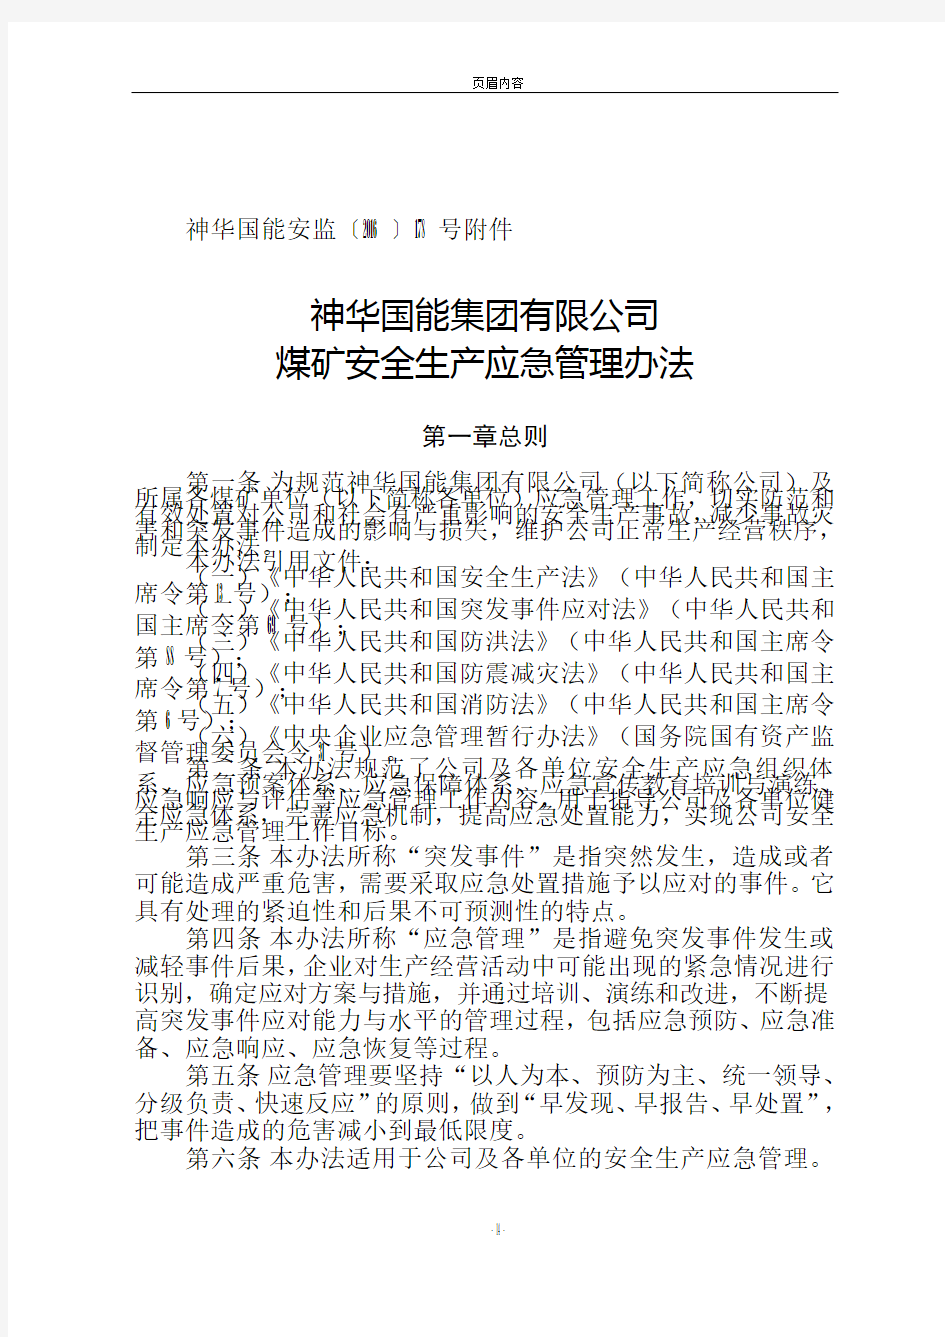 神华国能集团有限公司煤矿安全生产应急管理办法